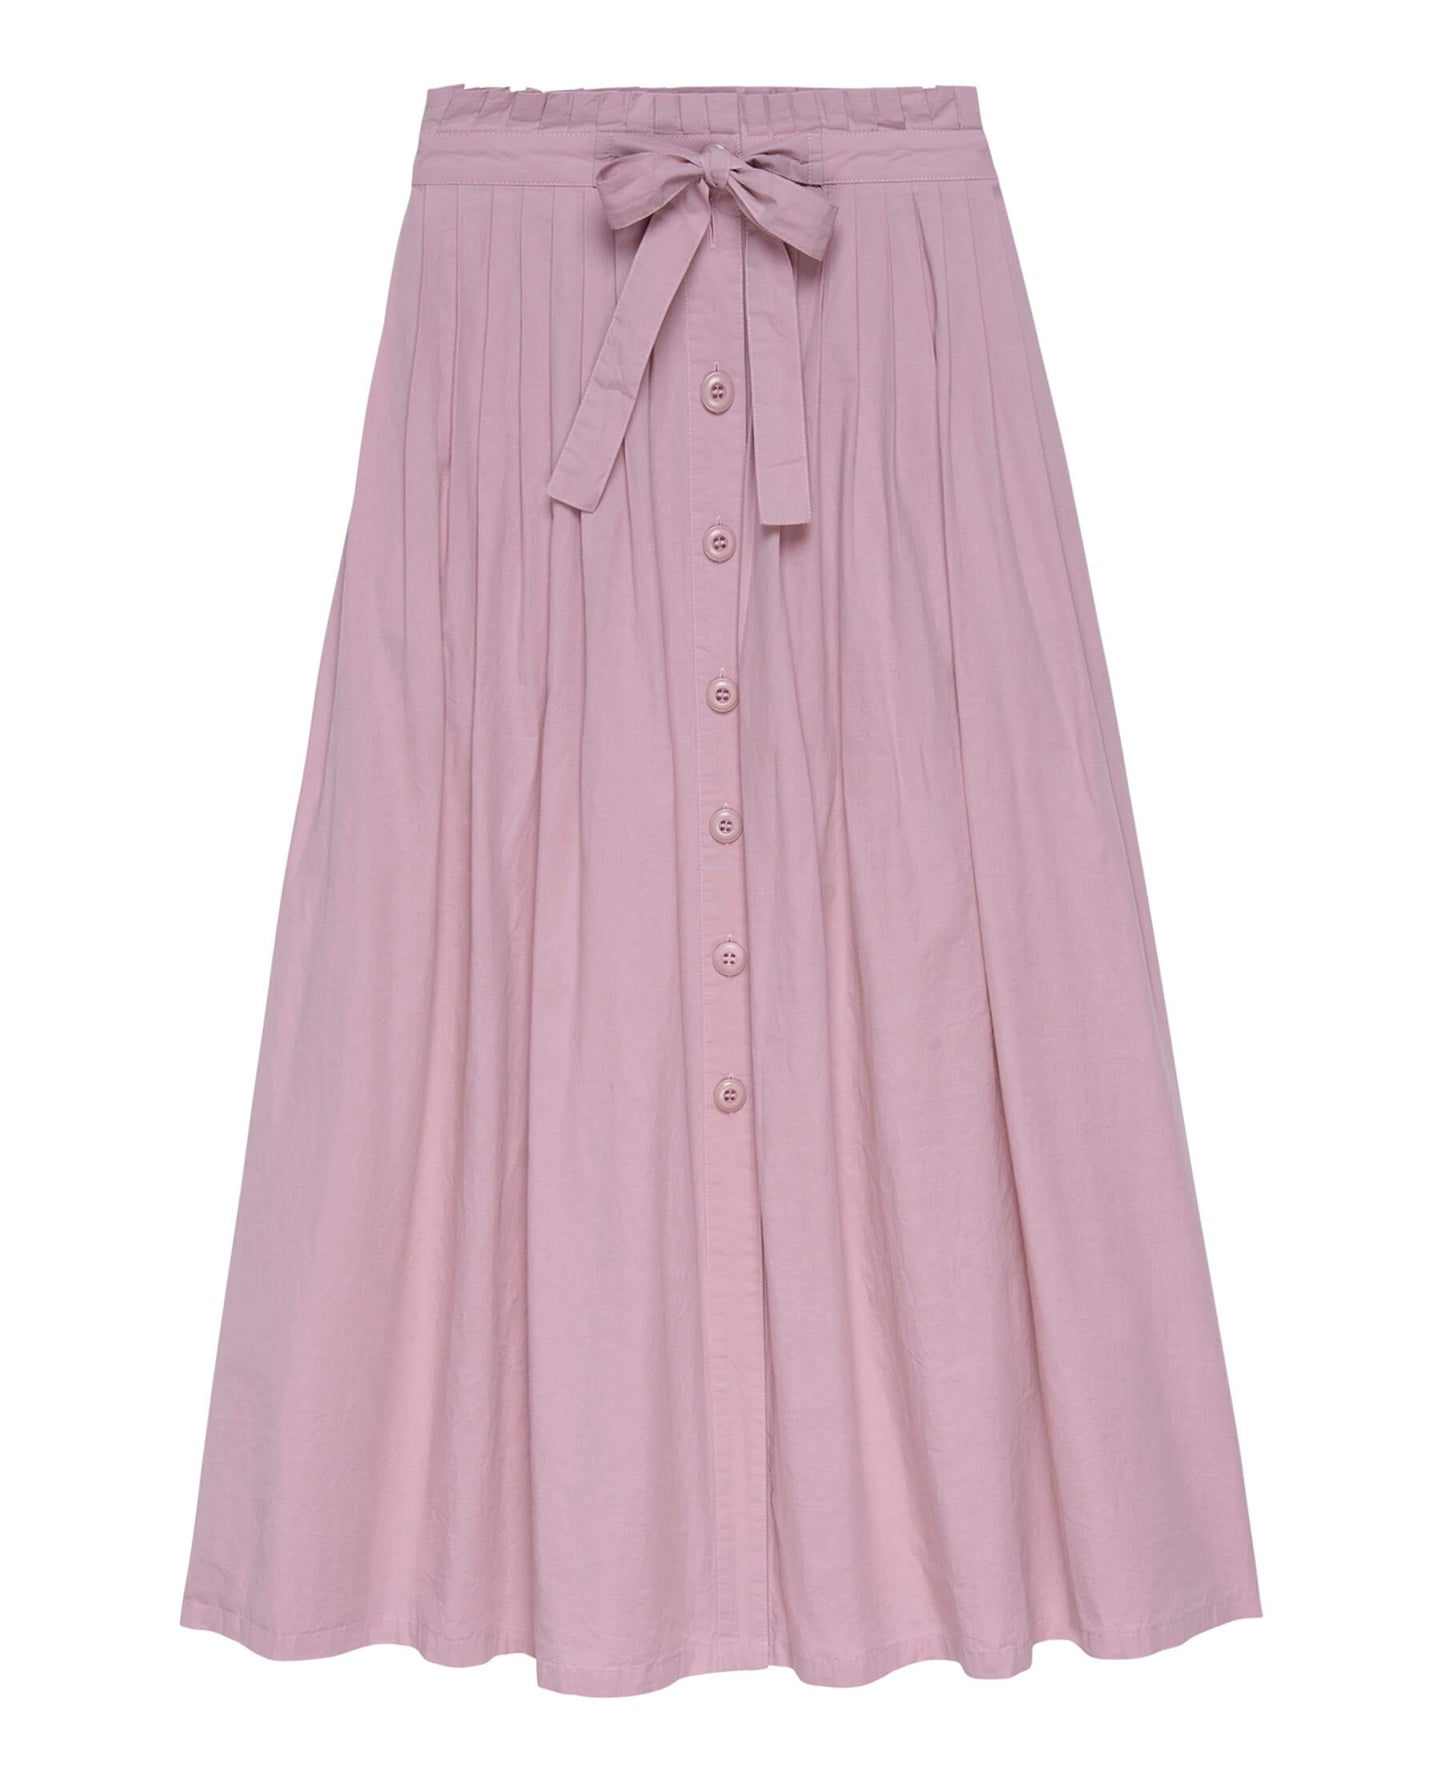 Skirt K122874 Treeline Skirt Lilac-Blossom